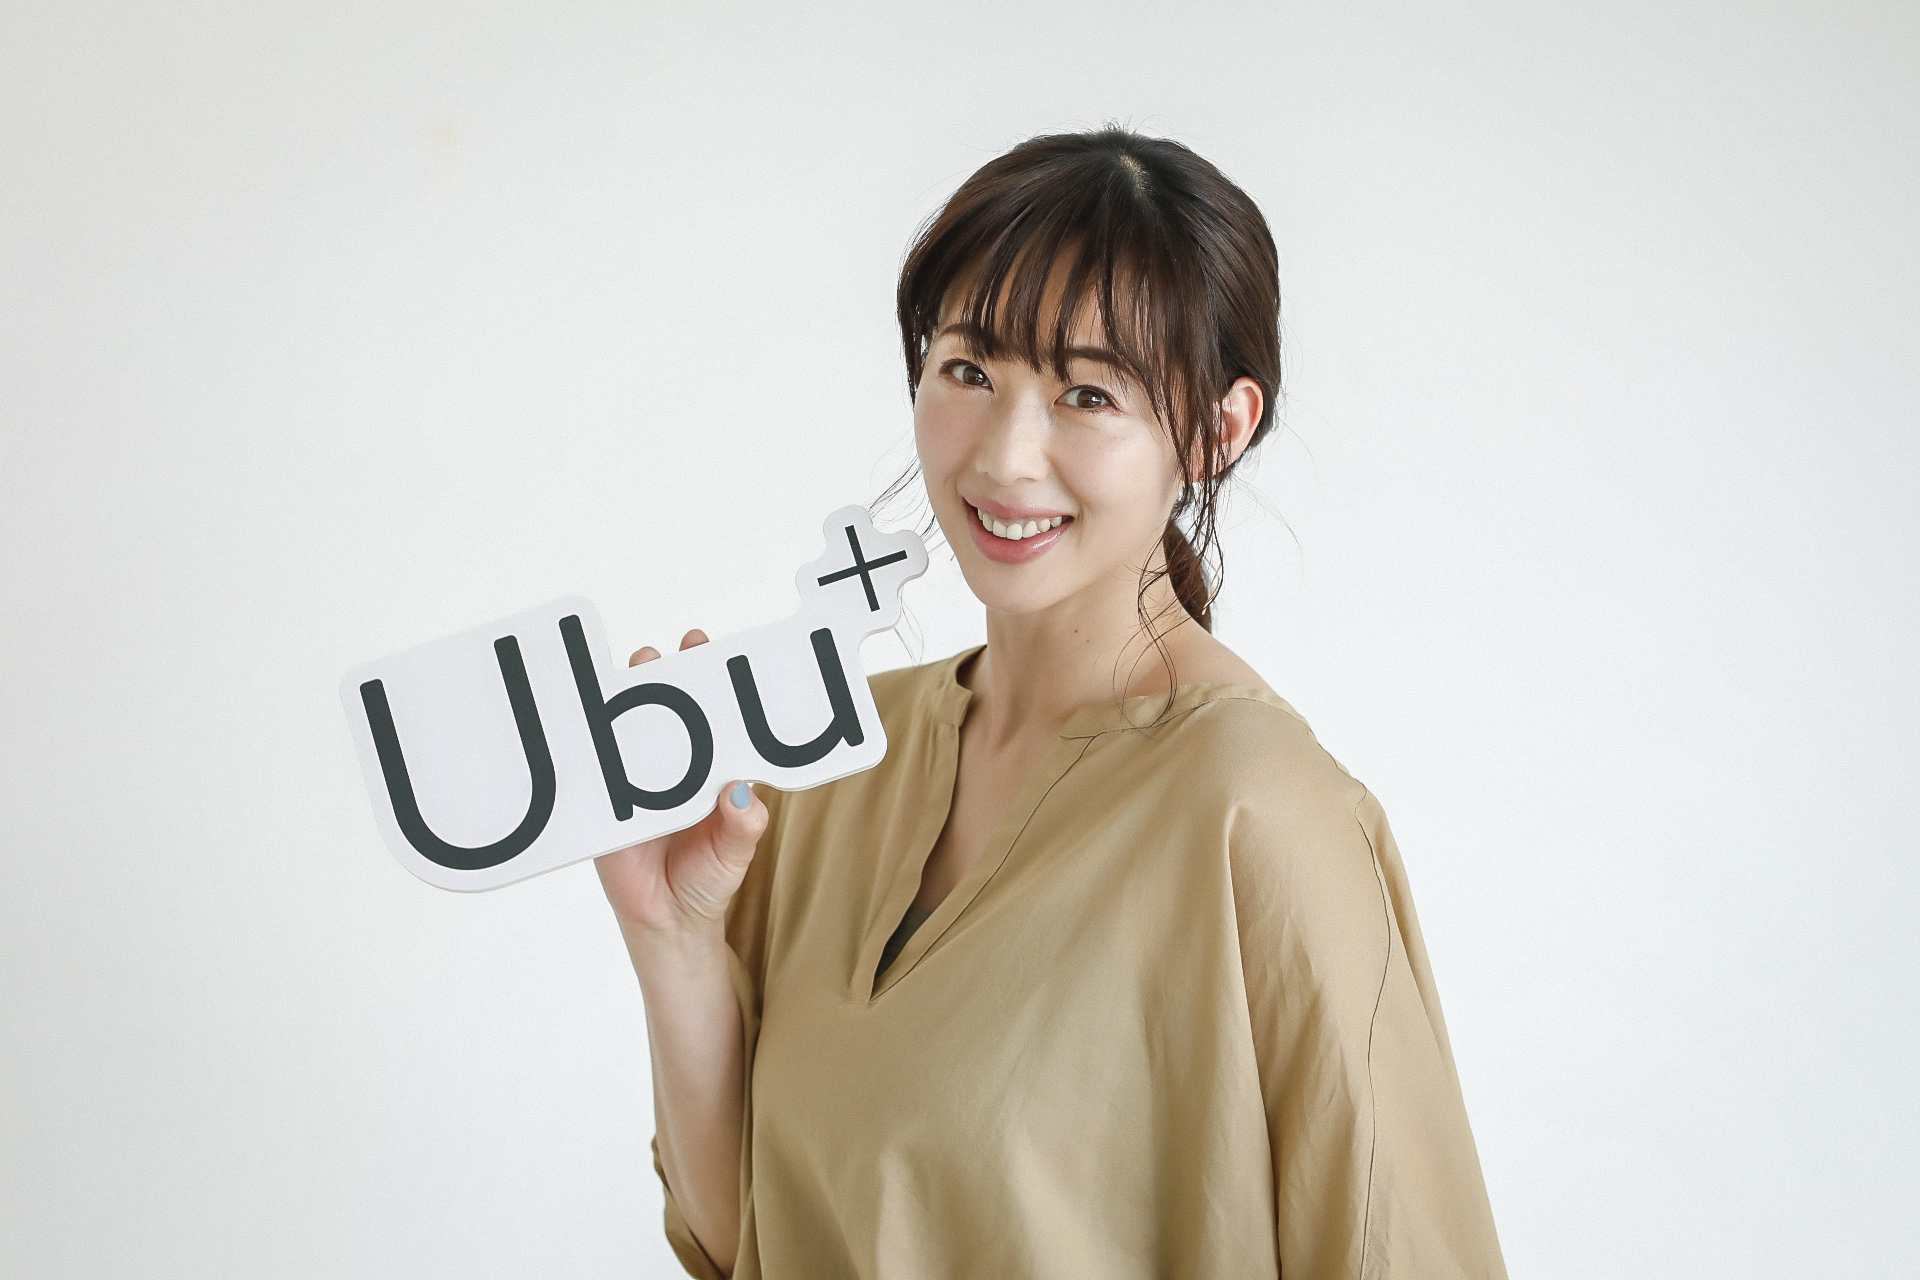 井上和香さんが登場 妊娠 出産にまつわる知識情報を発信するメディア Ubu がオープン Mederi株式会社のプレスリリース